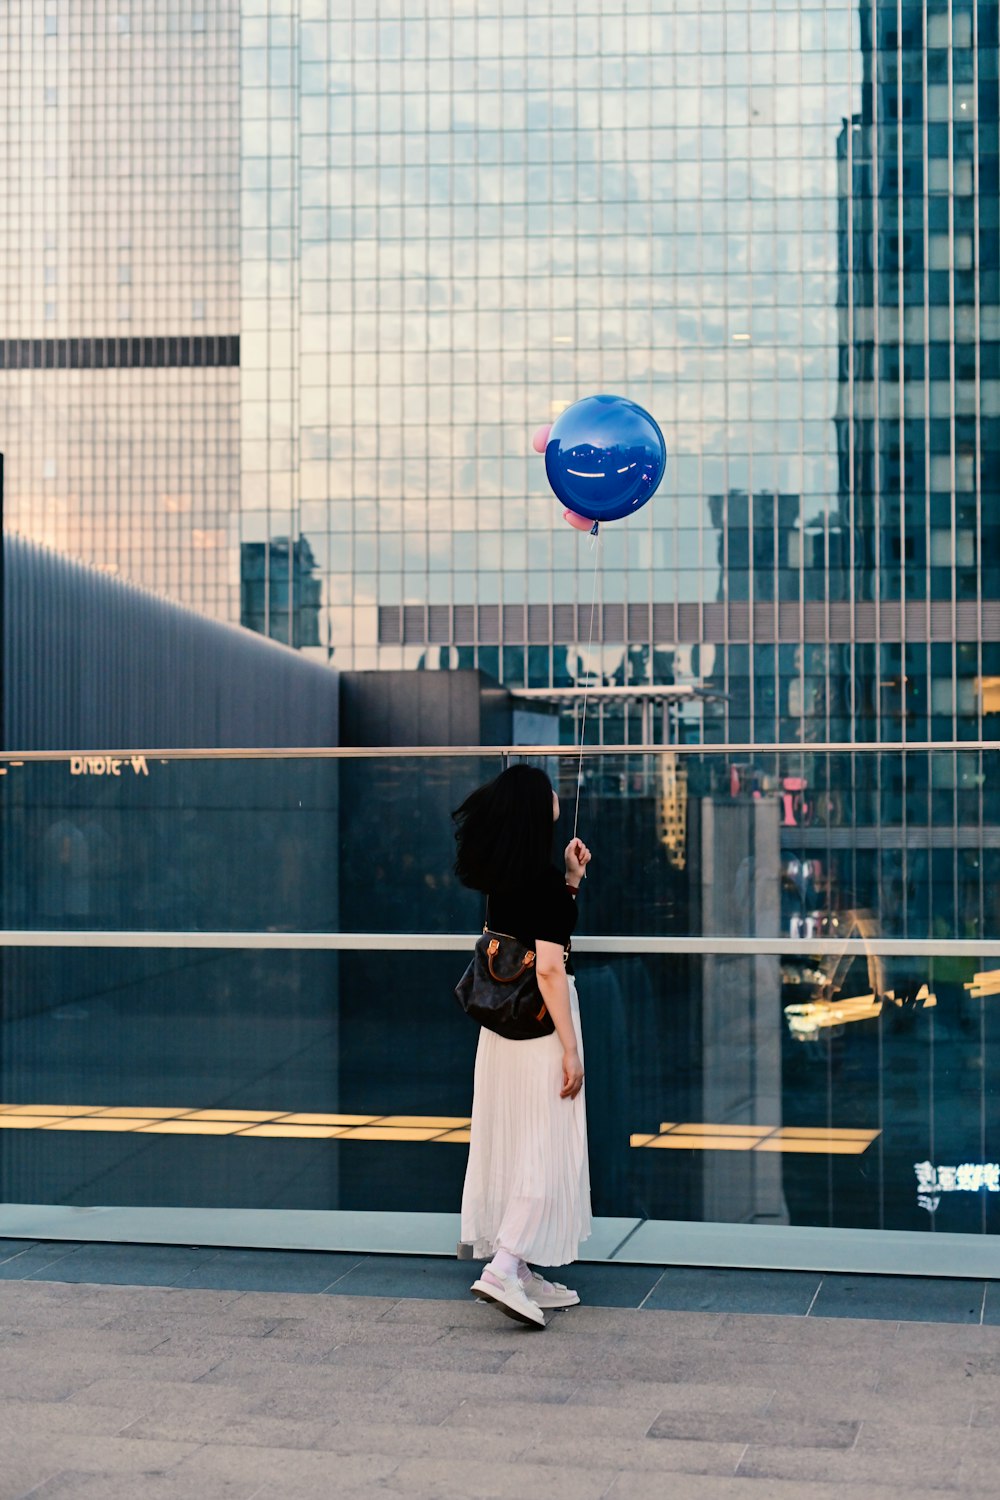 uma mulher em um vestido branco está voando um balão azul